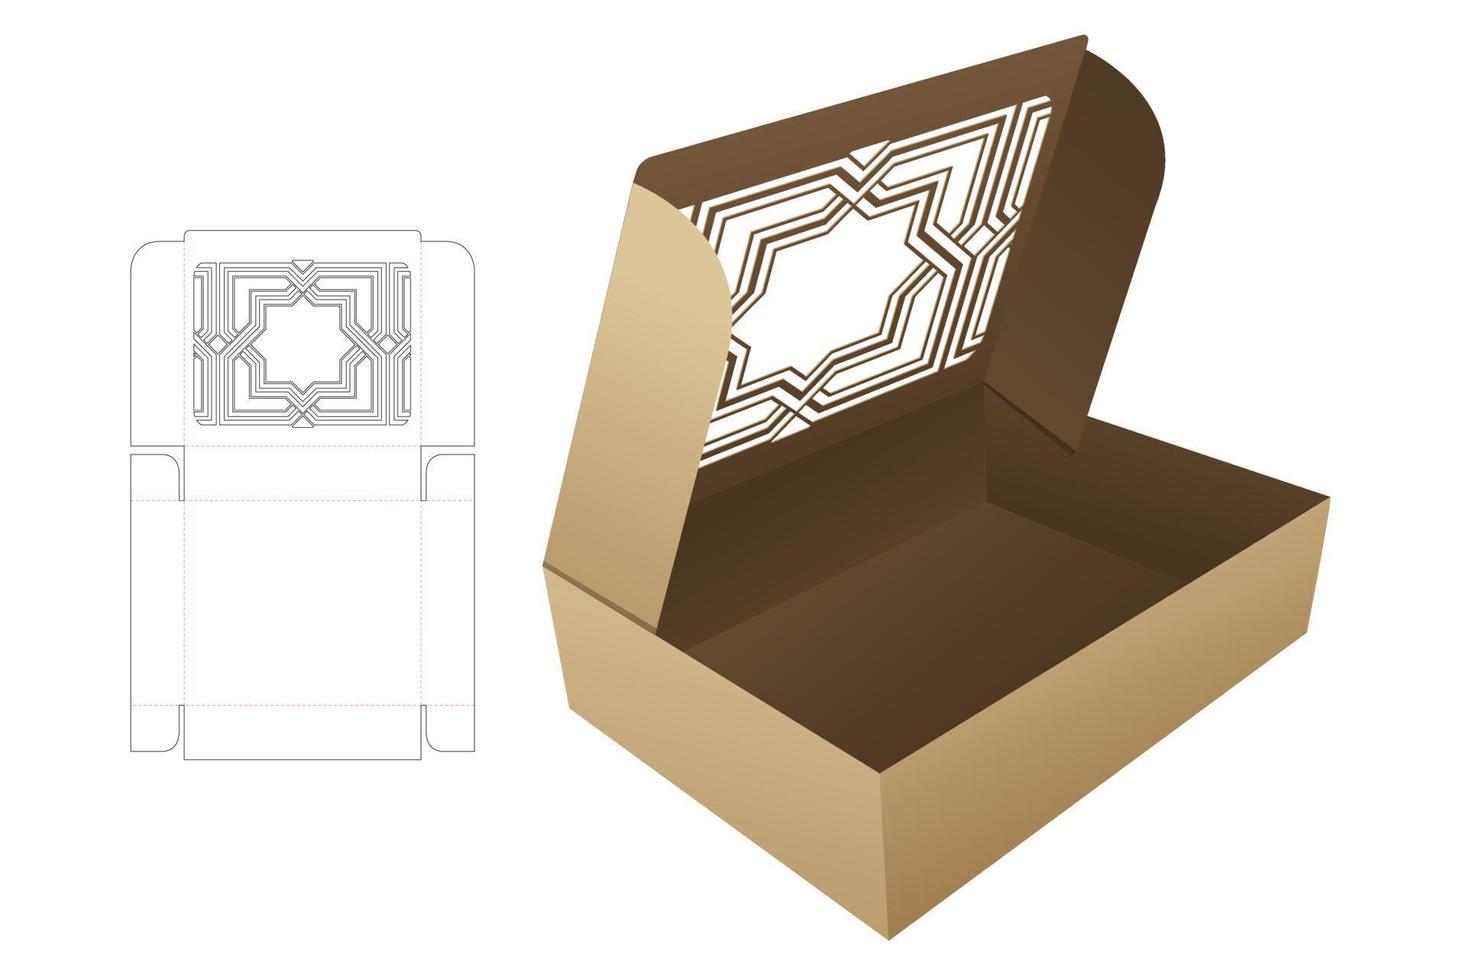 boîte pliante en carton avec modèle de découpe de fenêtre au pochoir et maquette 3d vecteur